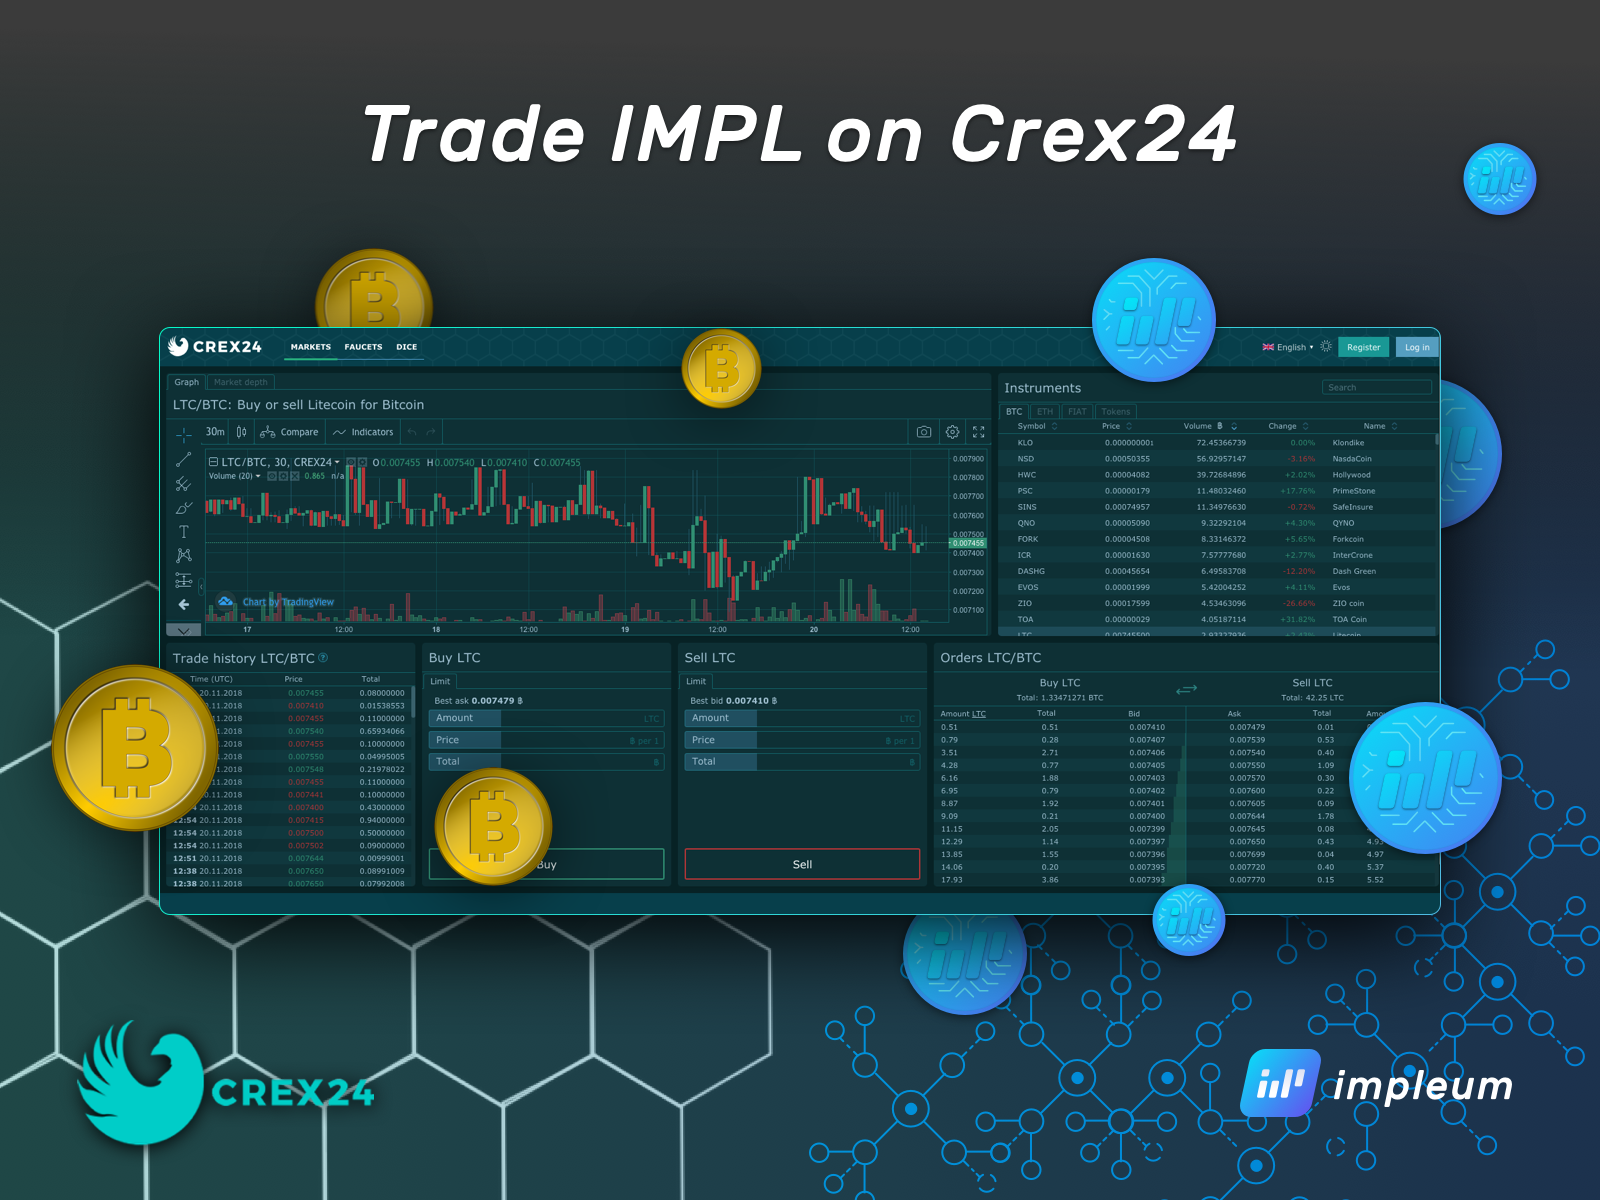 Trade IMPL on Crex24 - Impleum